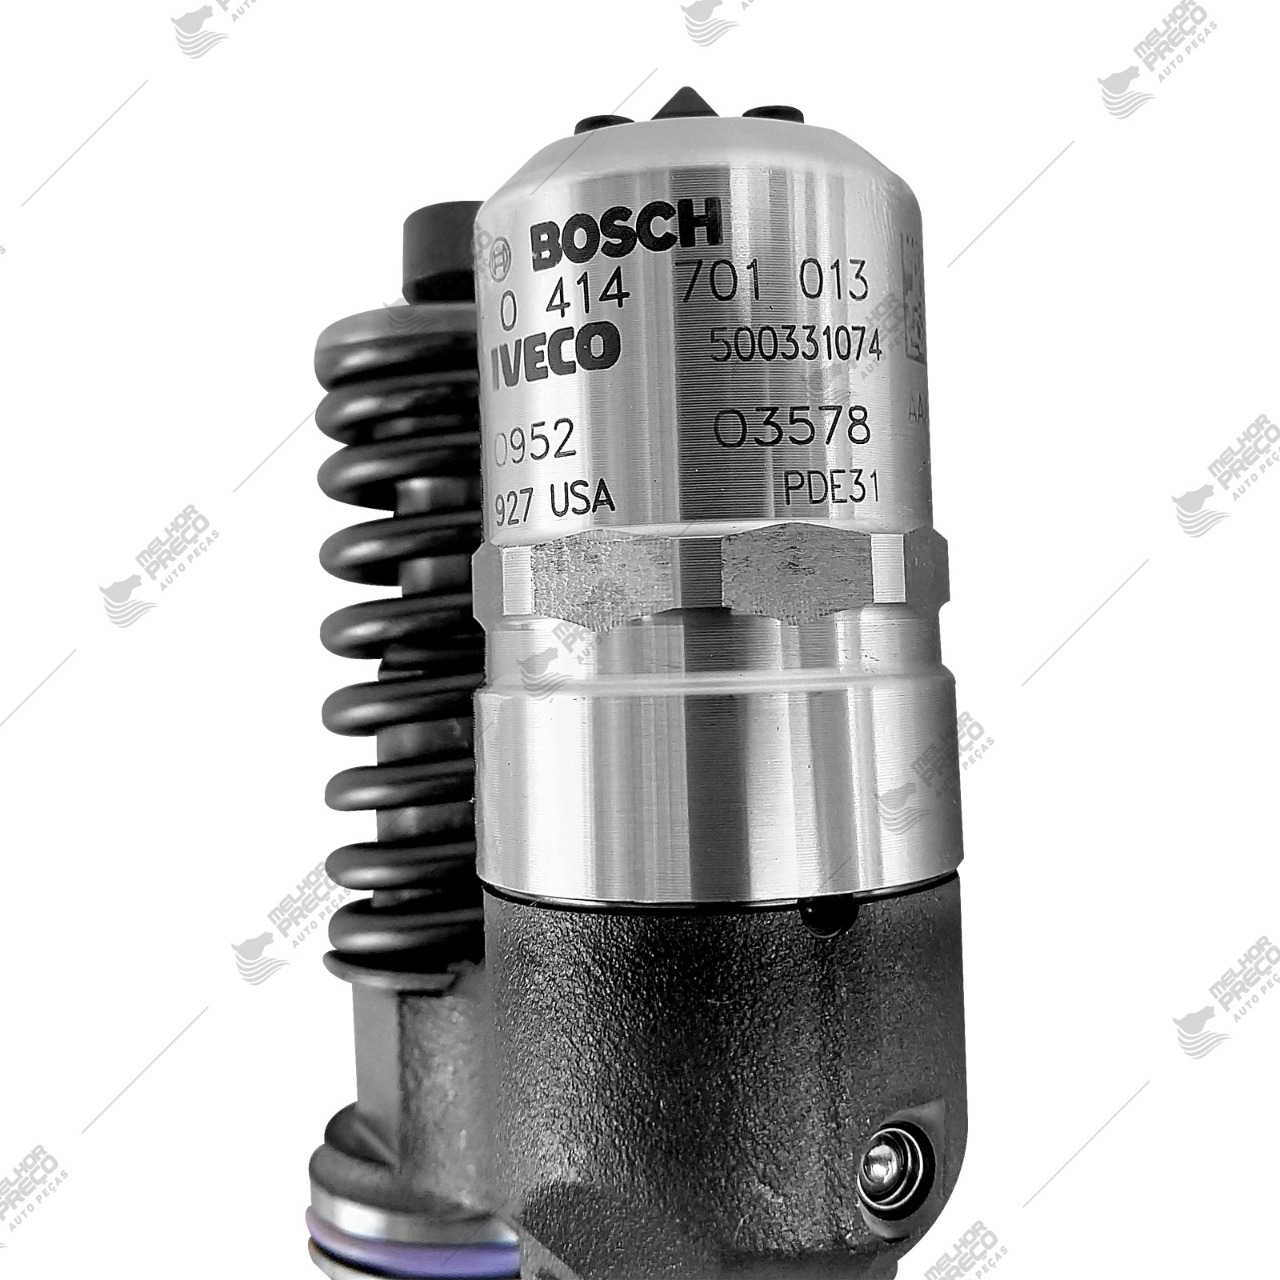 Unidade Injetora Iveco Stralis 0414701013 Nova Original Bosch